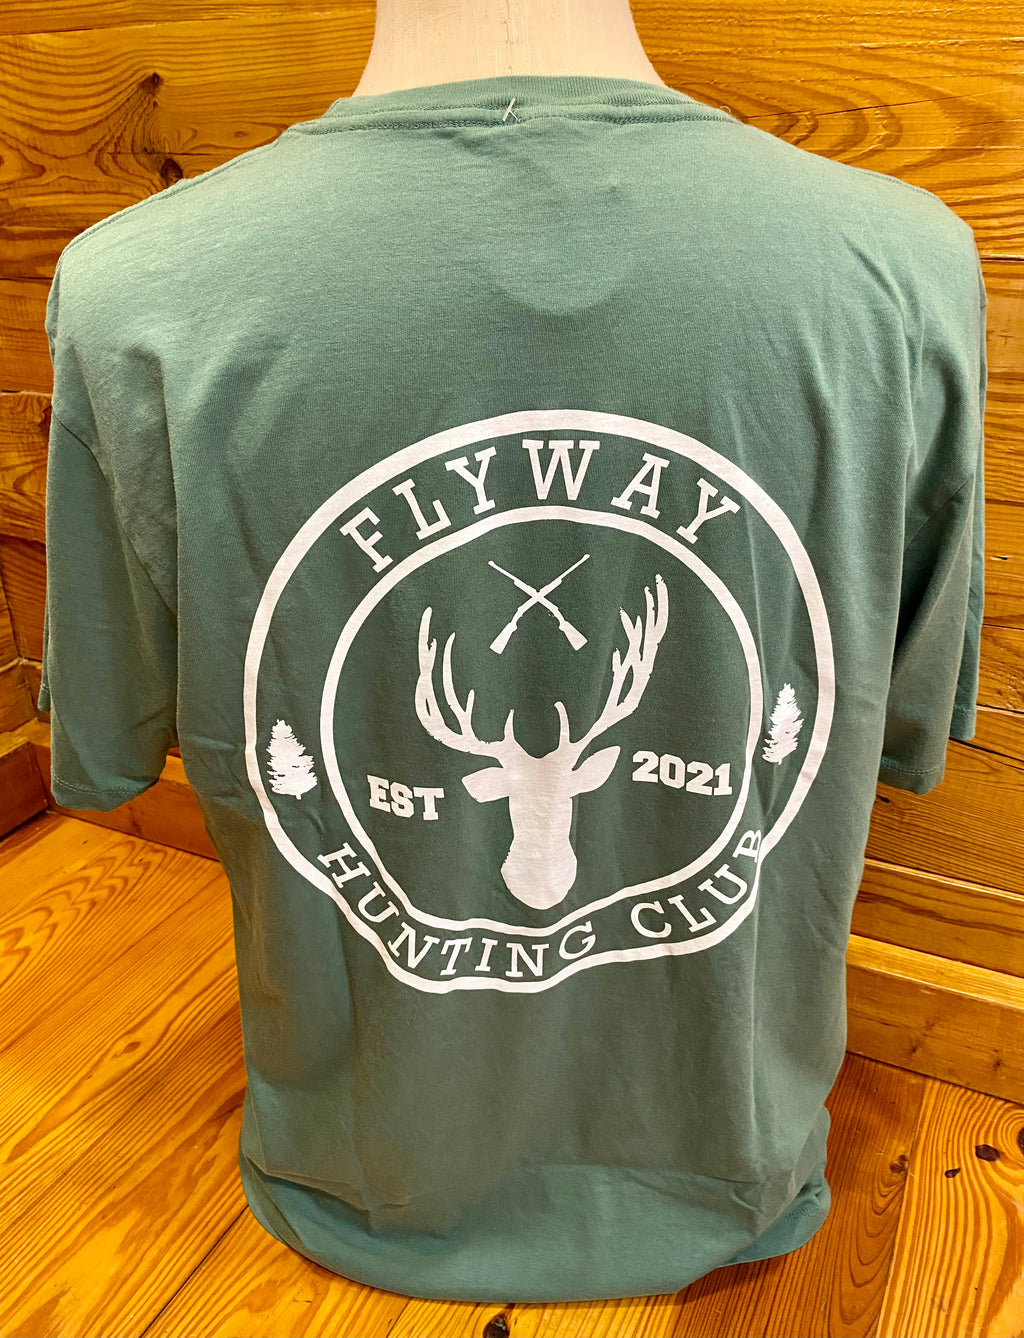 Flyway Clothing Co.- Hunting Club Tee